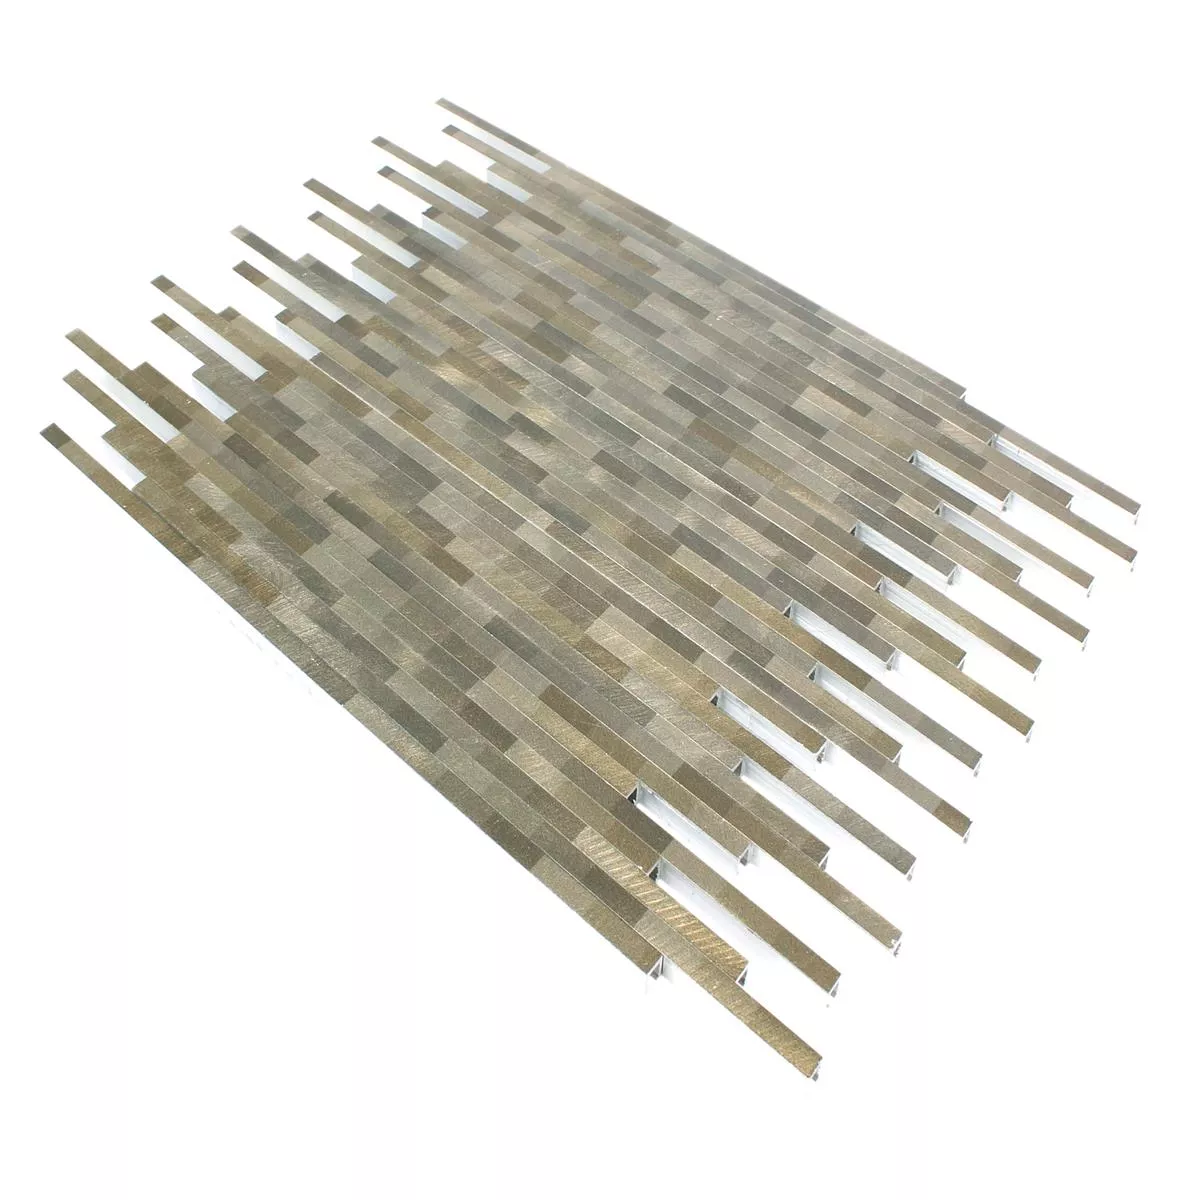 Mønster fra Mosaikkfliser Aluminium Wishbone Brun Beige